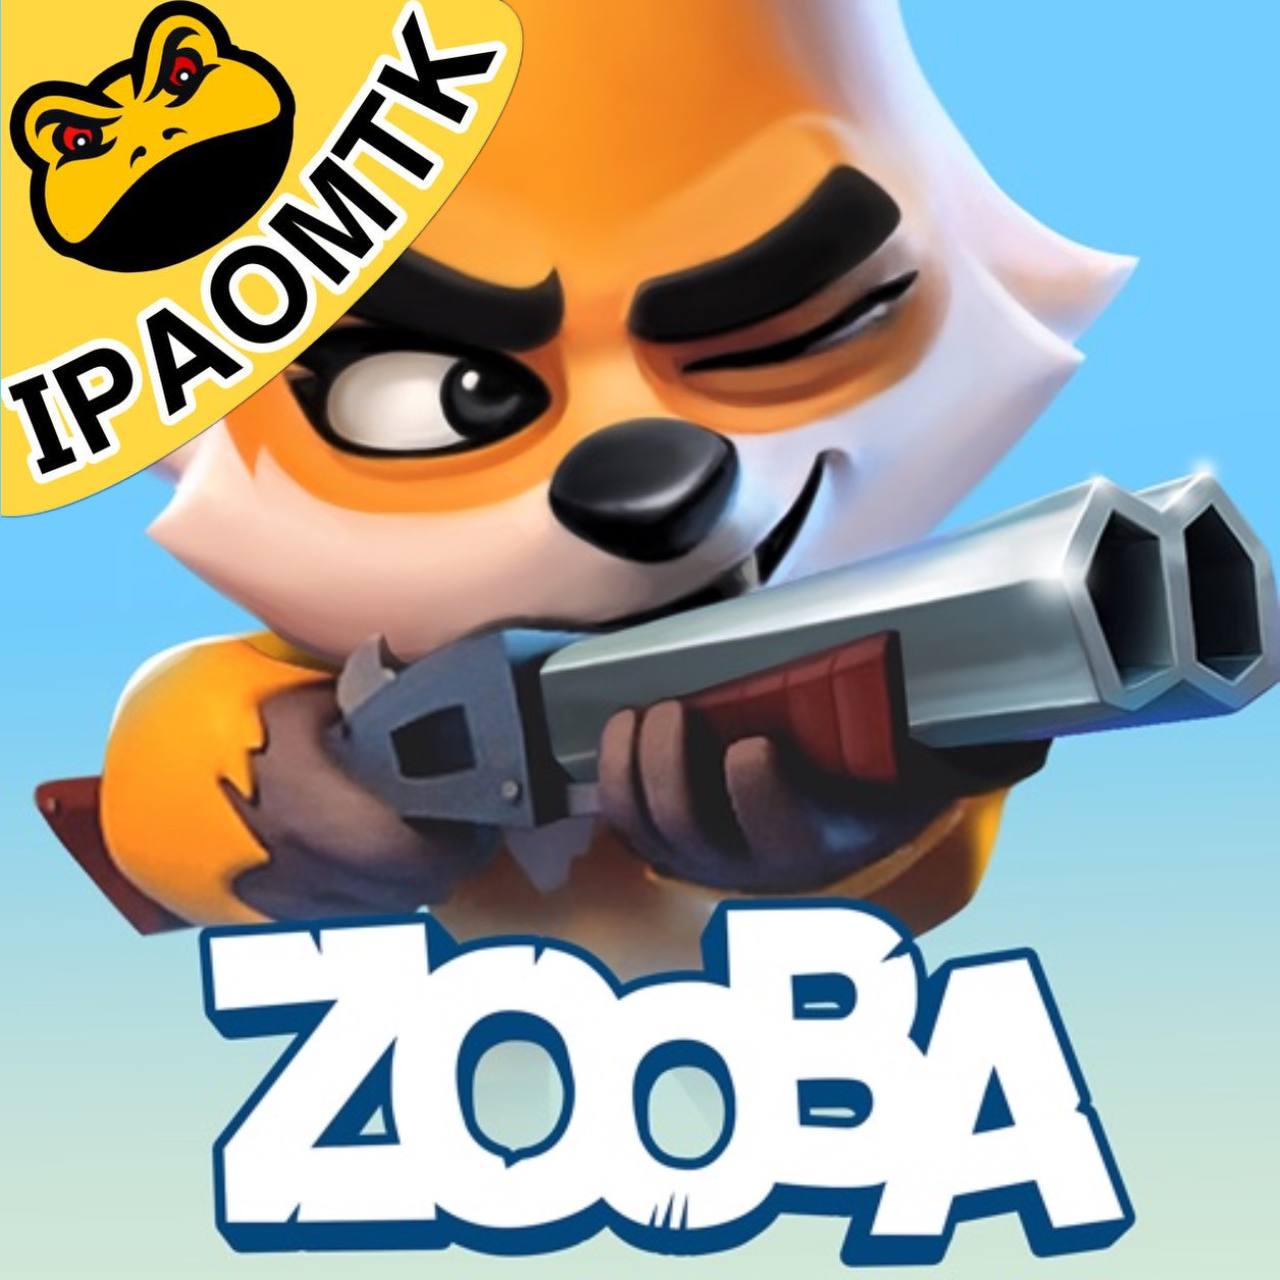 Zooba IPA